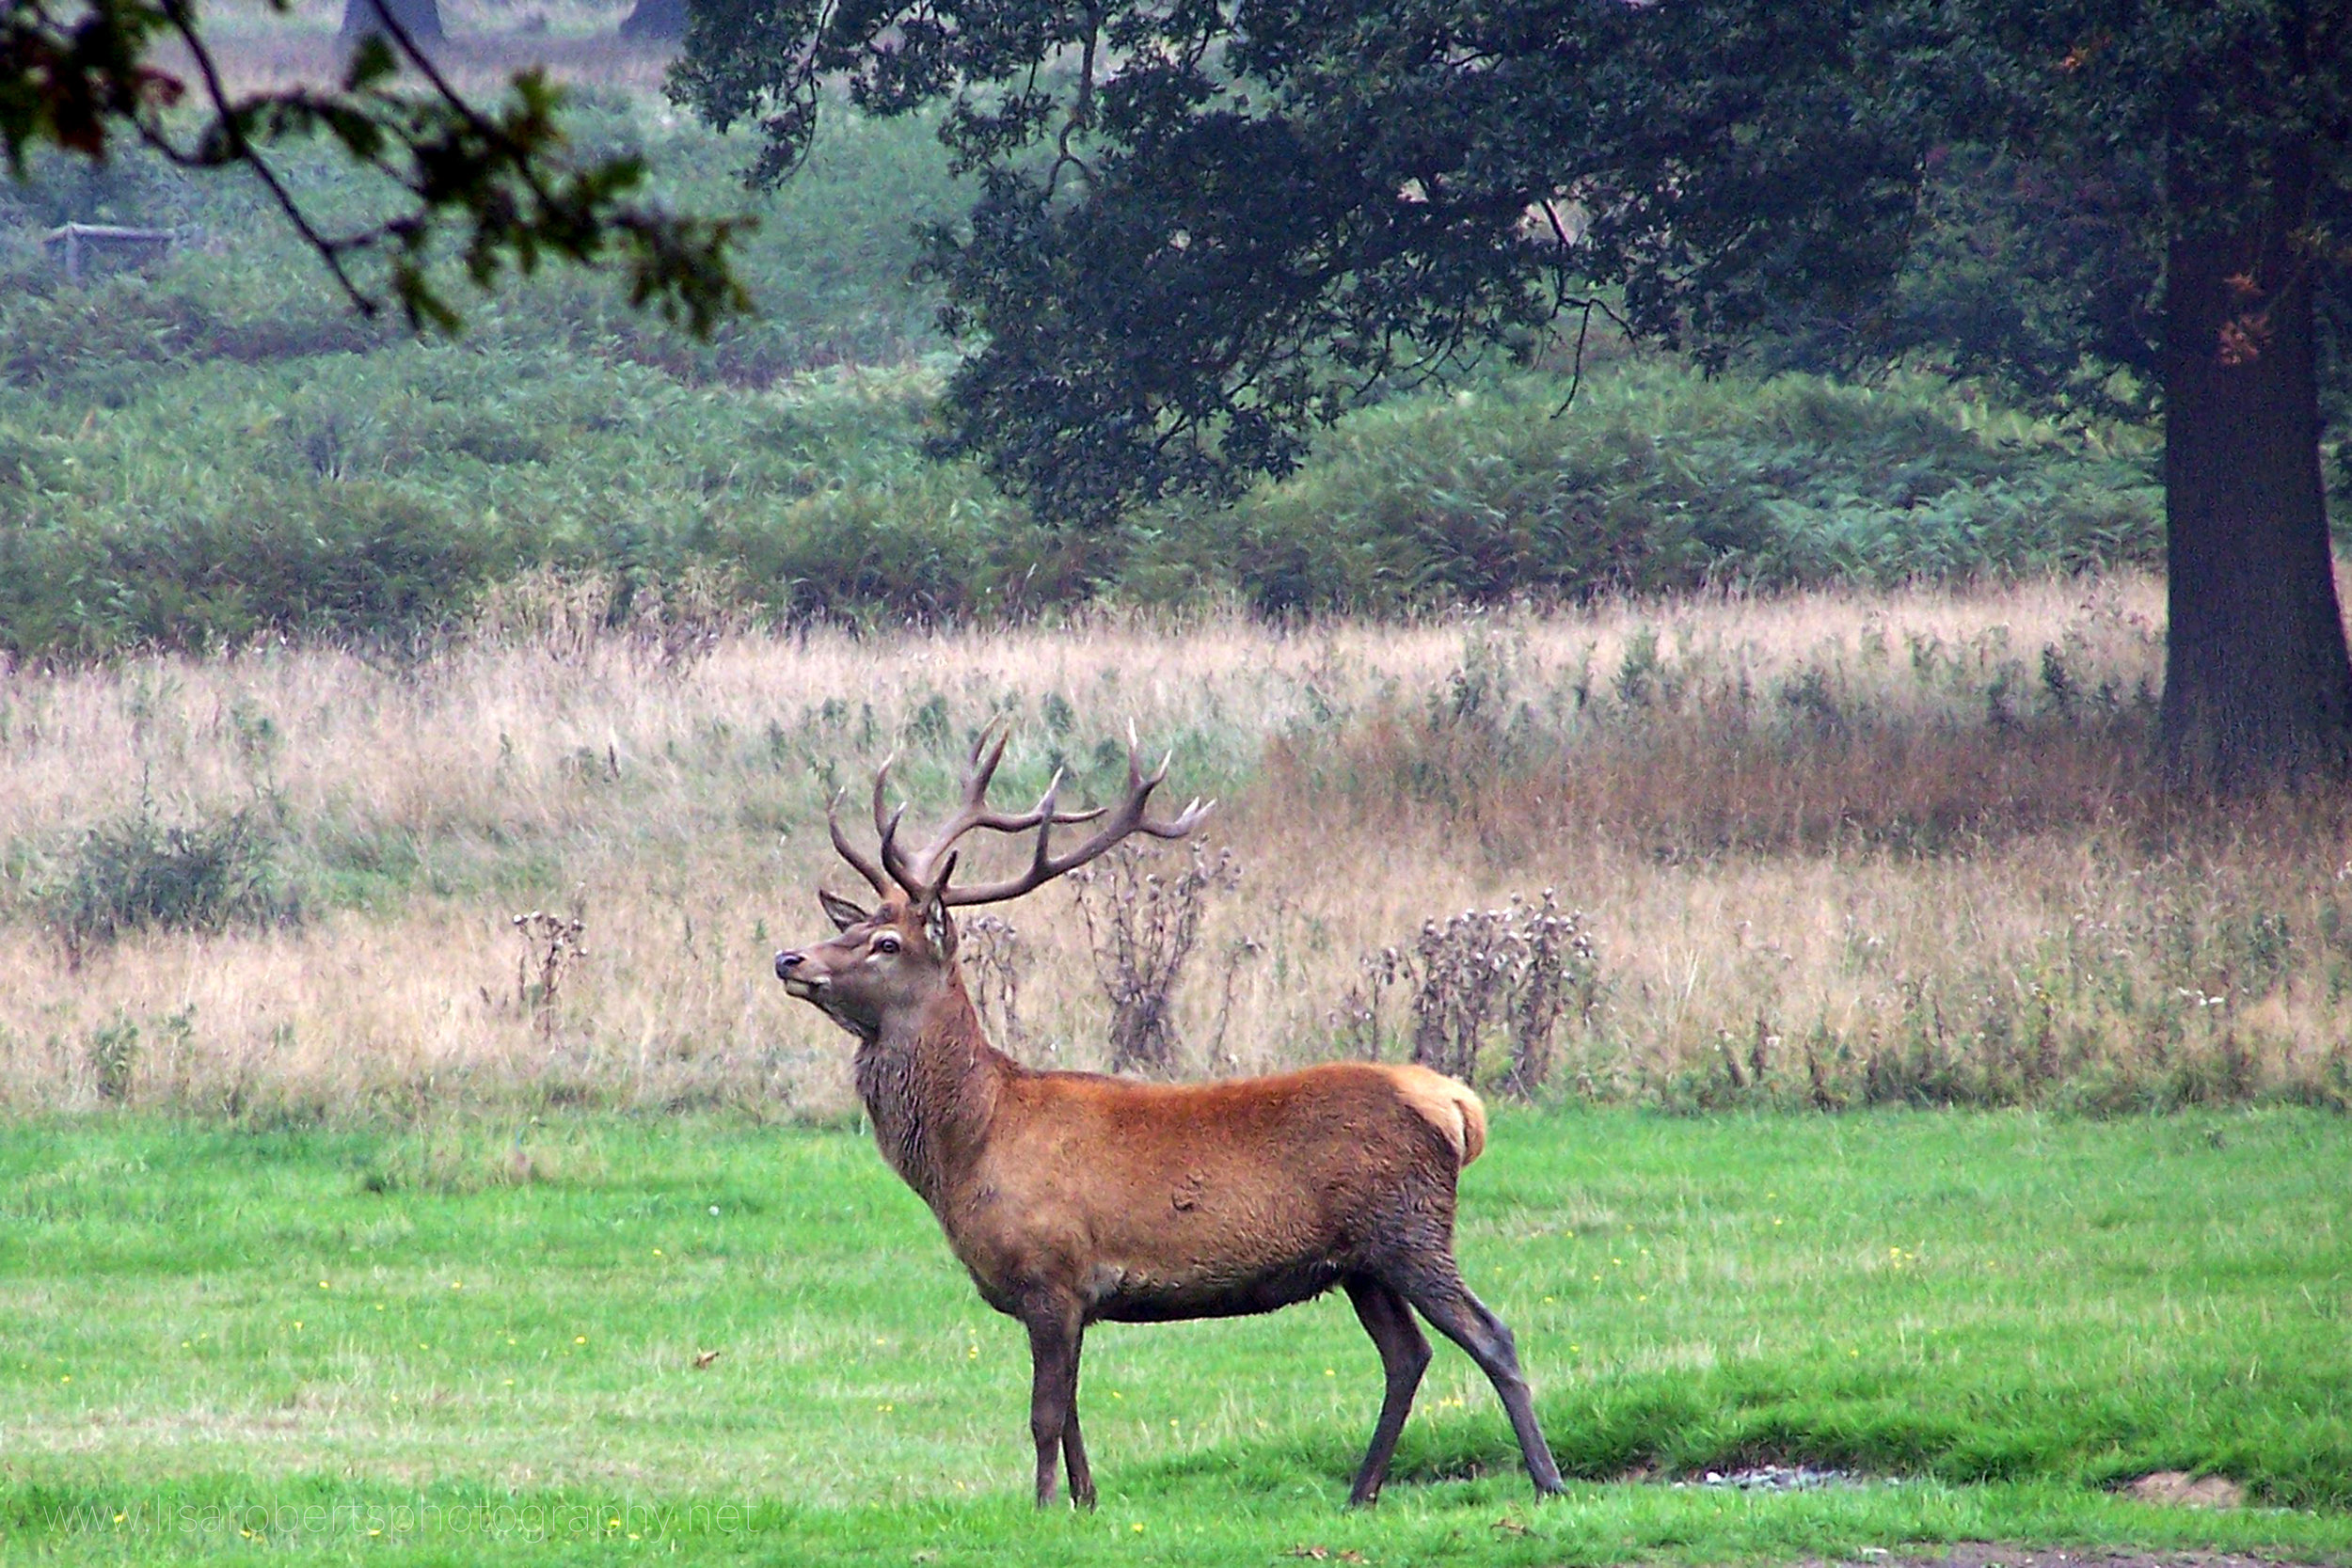  Red deer stag at Eastnor Deer Park 